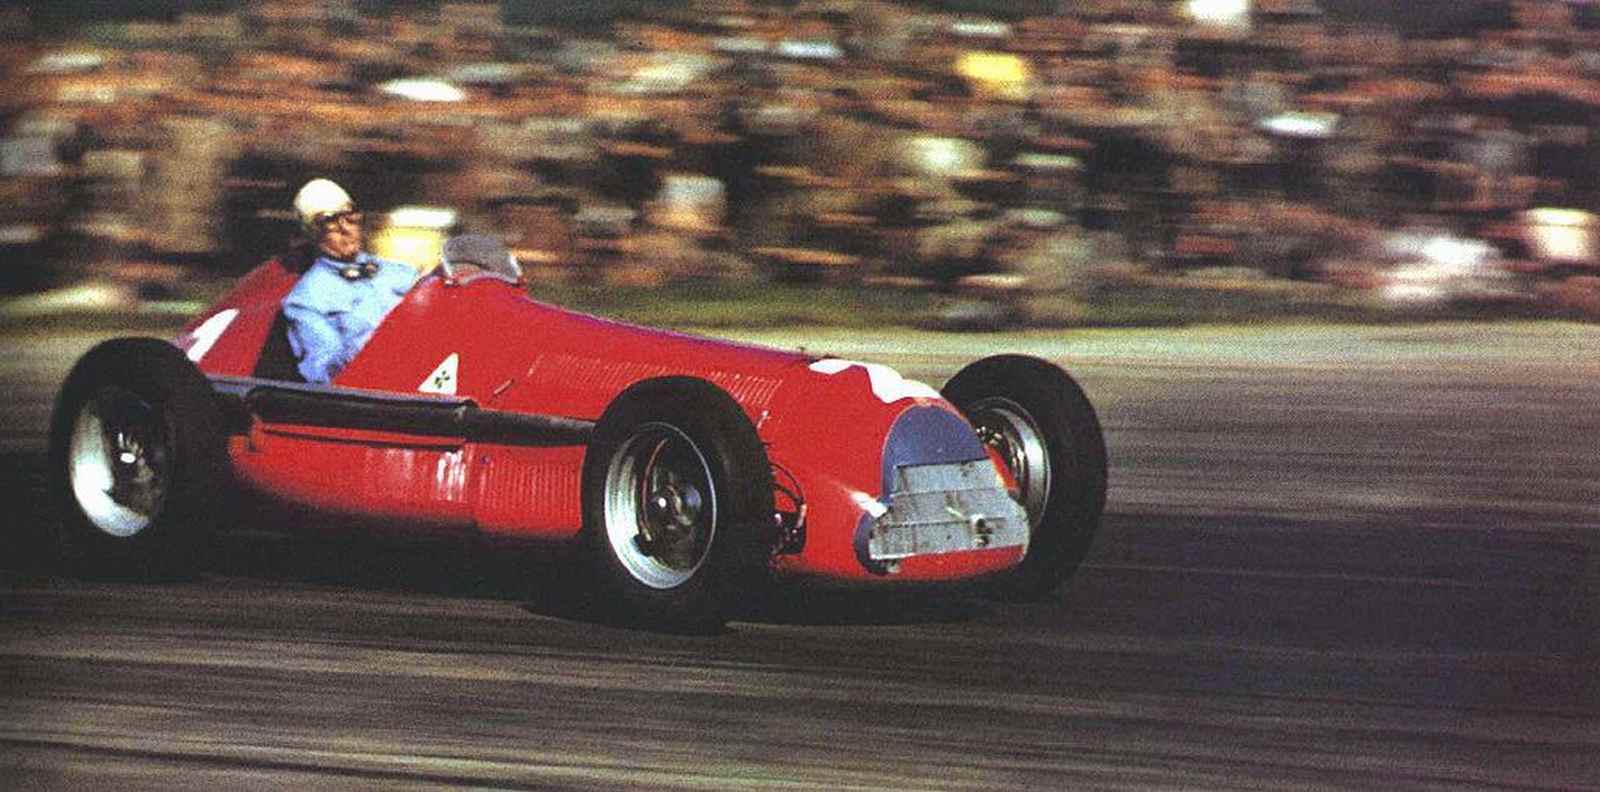 Farina voltou a ser o líder do recorde empatado com Fangio ainda em 1950, quando venceu pela terceira vez na categoria. Última vez que o veremos por aqui